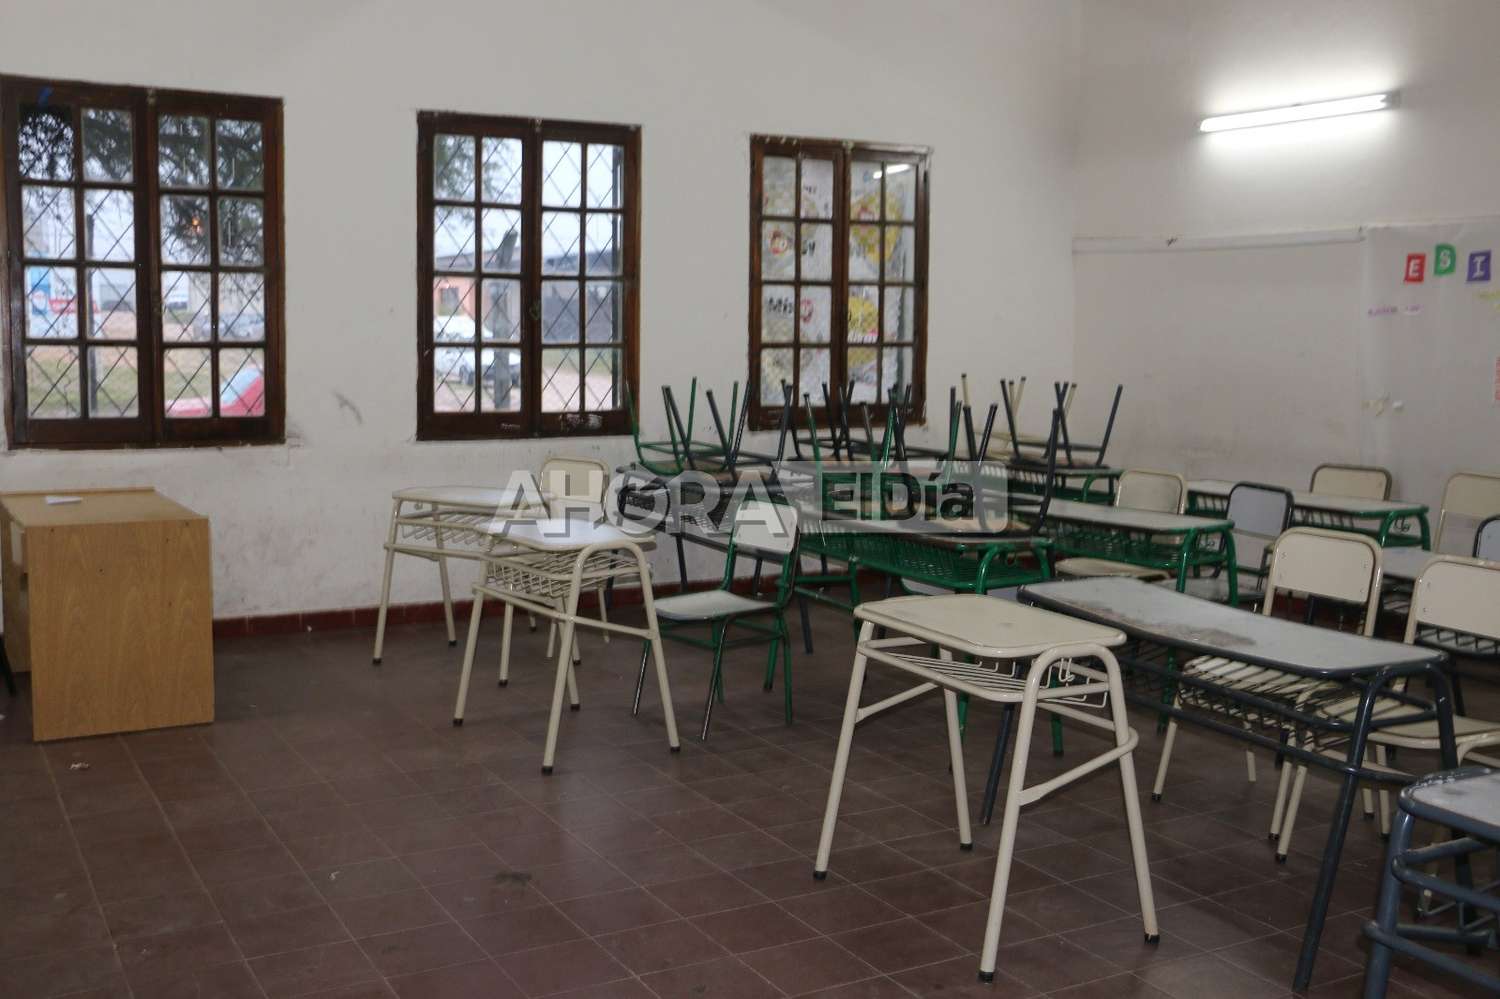 Comenzó el paro docente de 72 horas en Gualeguaychú